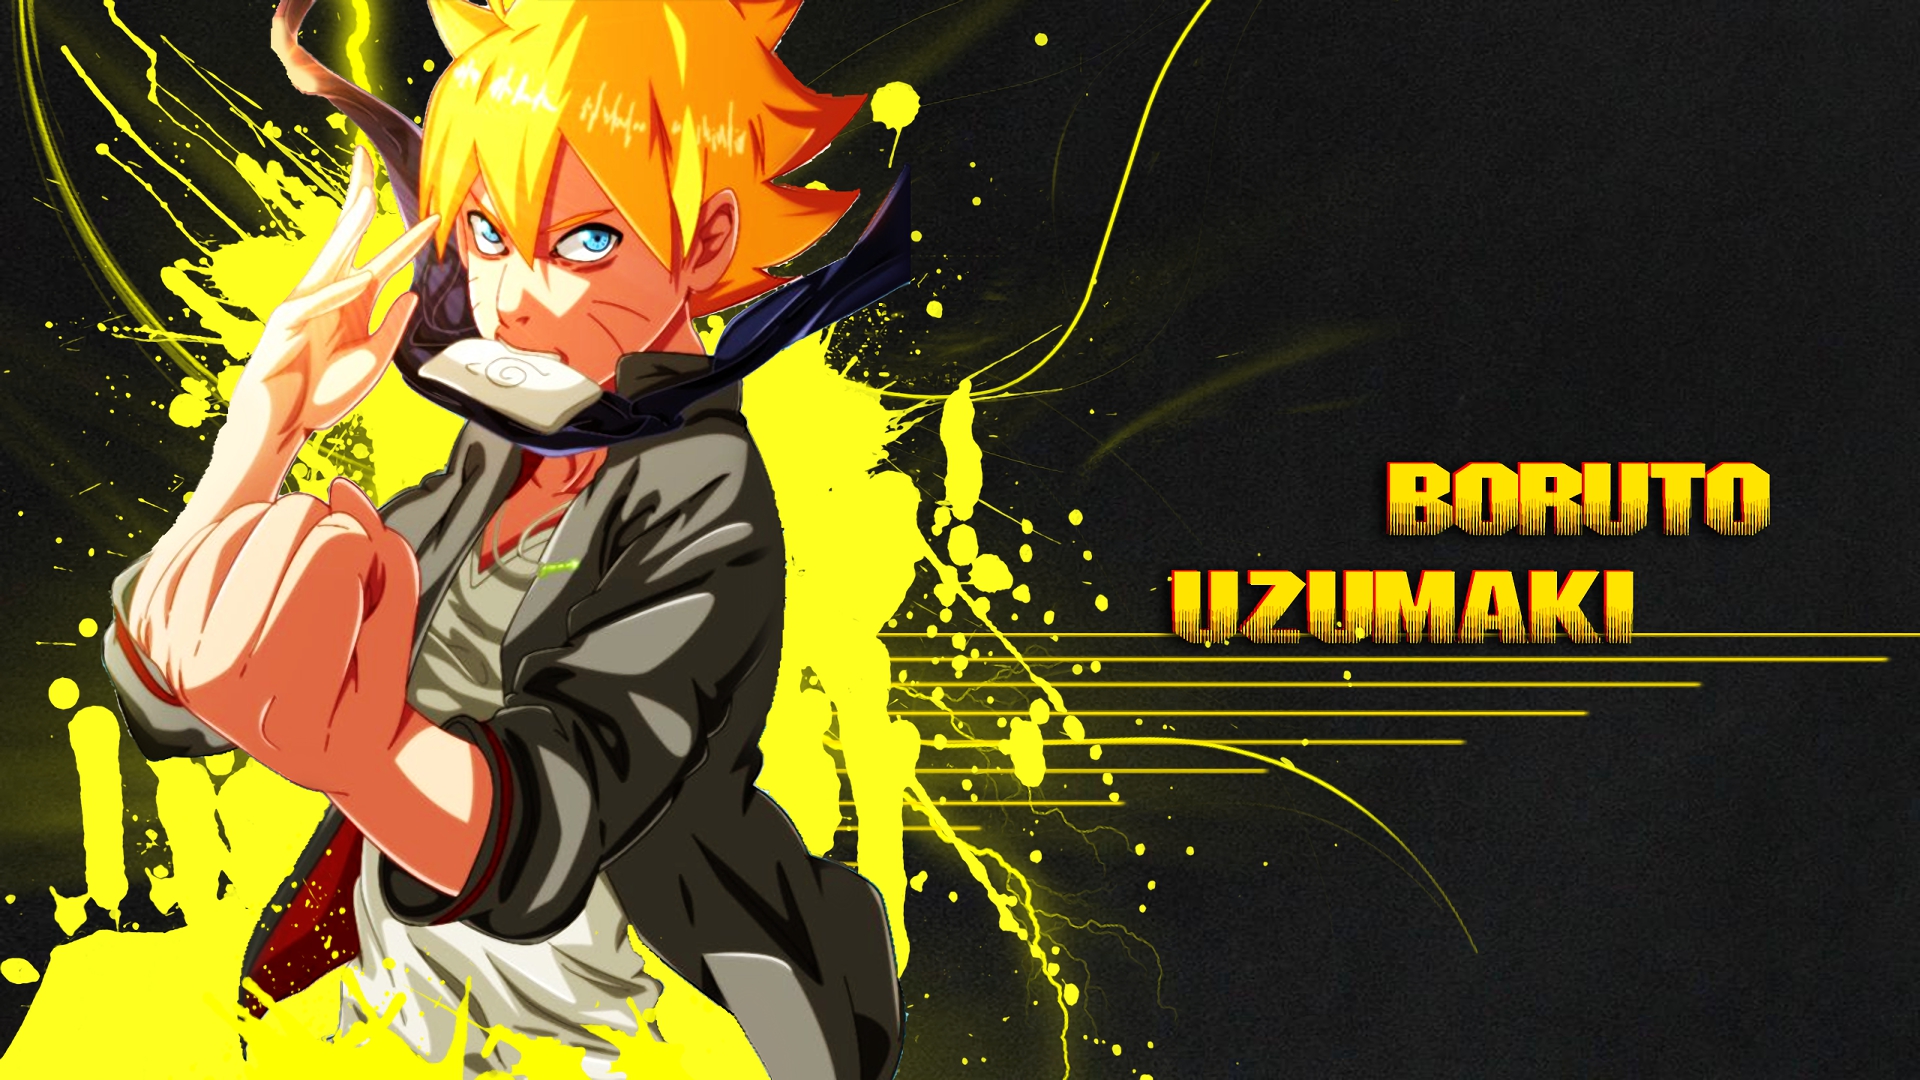 Papel de parede HD para desktop: Anime, Naruto, Boruto Uzumaki, Boruto  baixar imagem grátis #408214